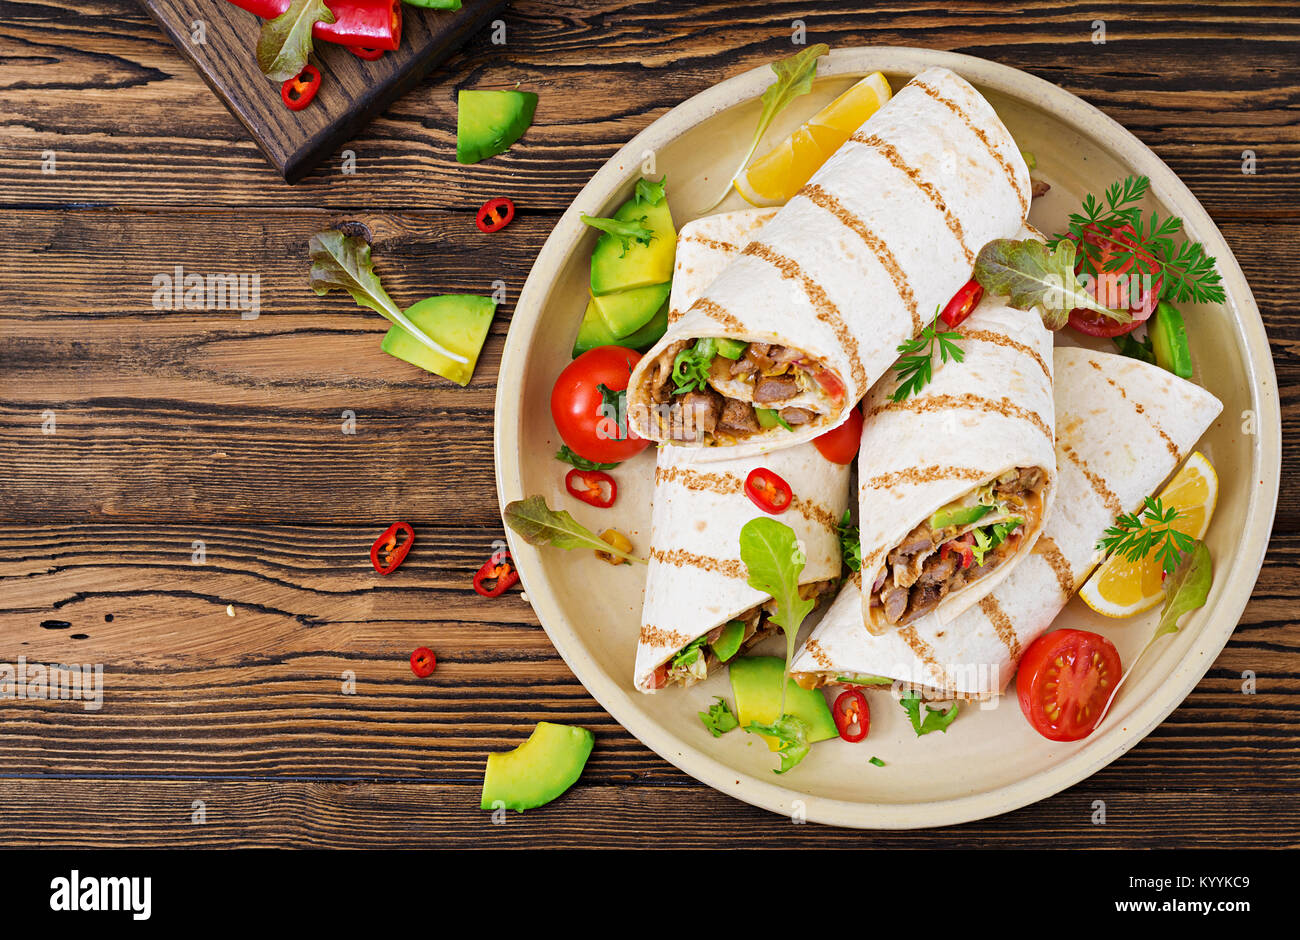 Burrito si avvolge con manzo e verdure su un sfondo di legno. Carni bovine burrito , cibo messicano. Cibo sano e background. Cucina messicana.Vista dall'alto. Foto Stock